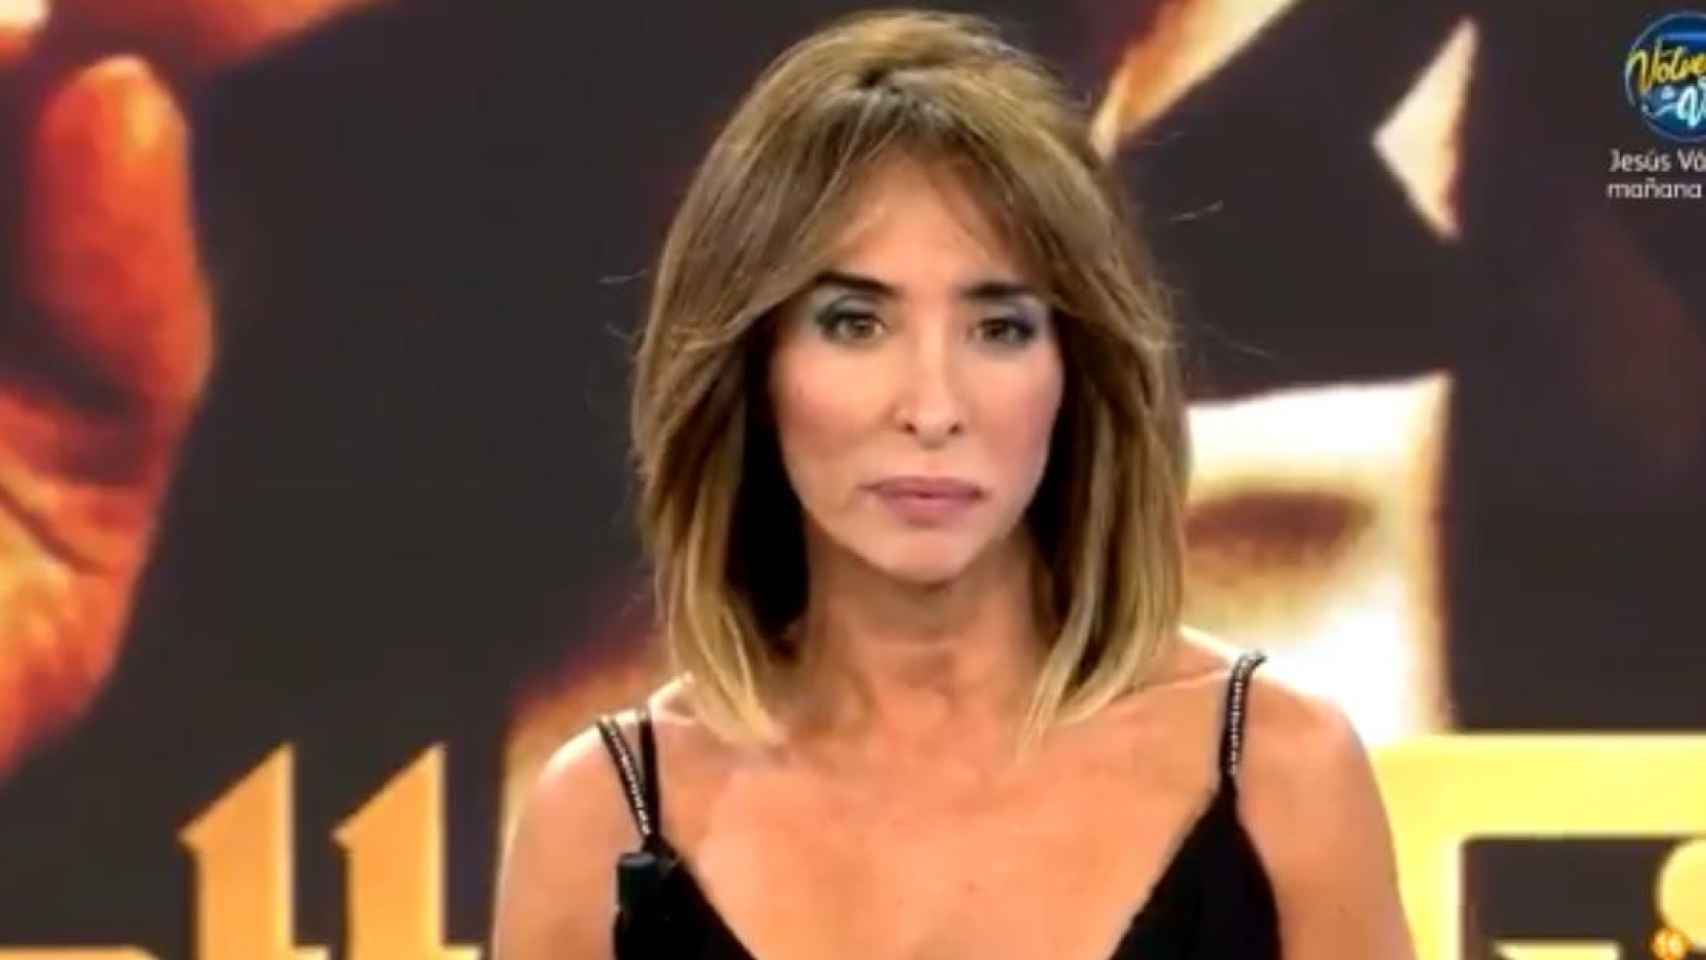 La presentadora María Patiño / MEDIASET